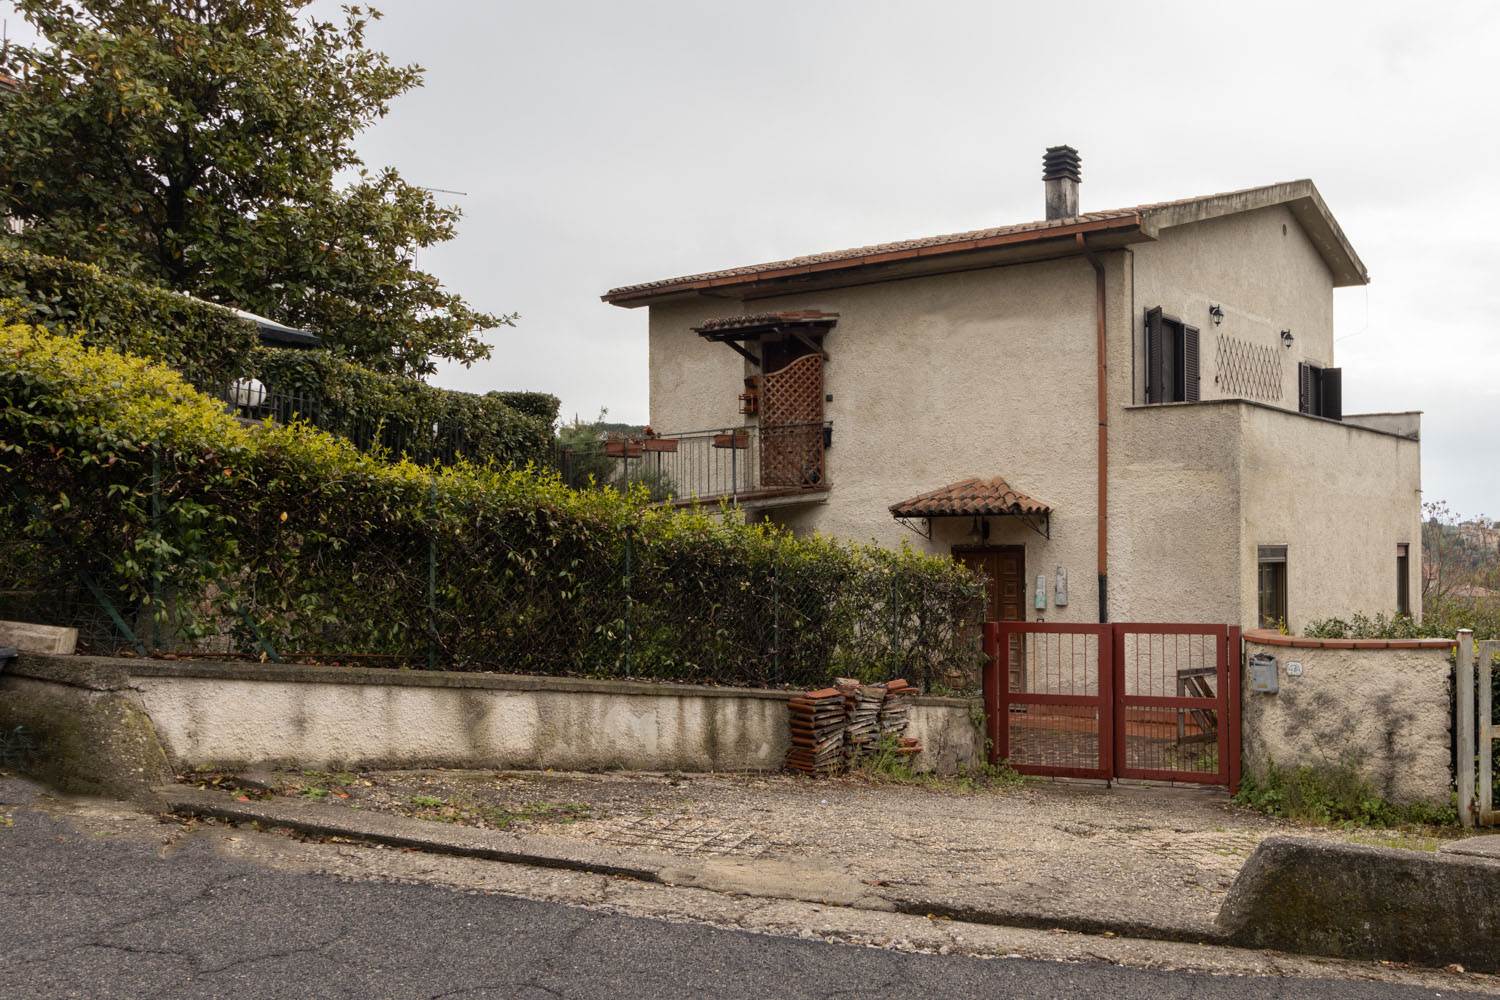 Villa Bifamiliare in vendita a Poggio Mirteto, 4 locali, prezzo € 140.000 | PortaleAgenzieImmobiliari.it